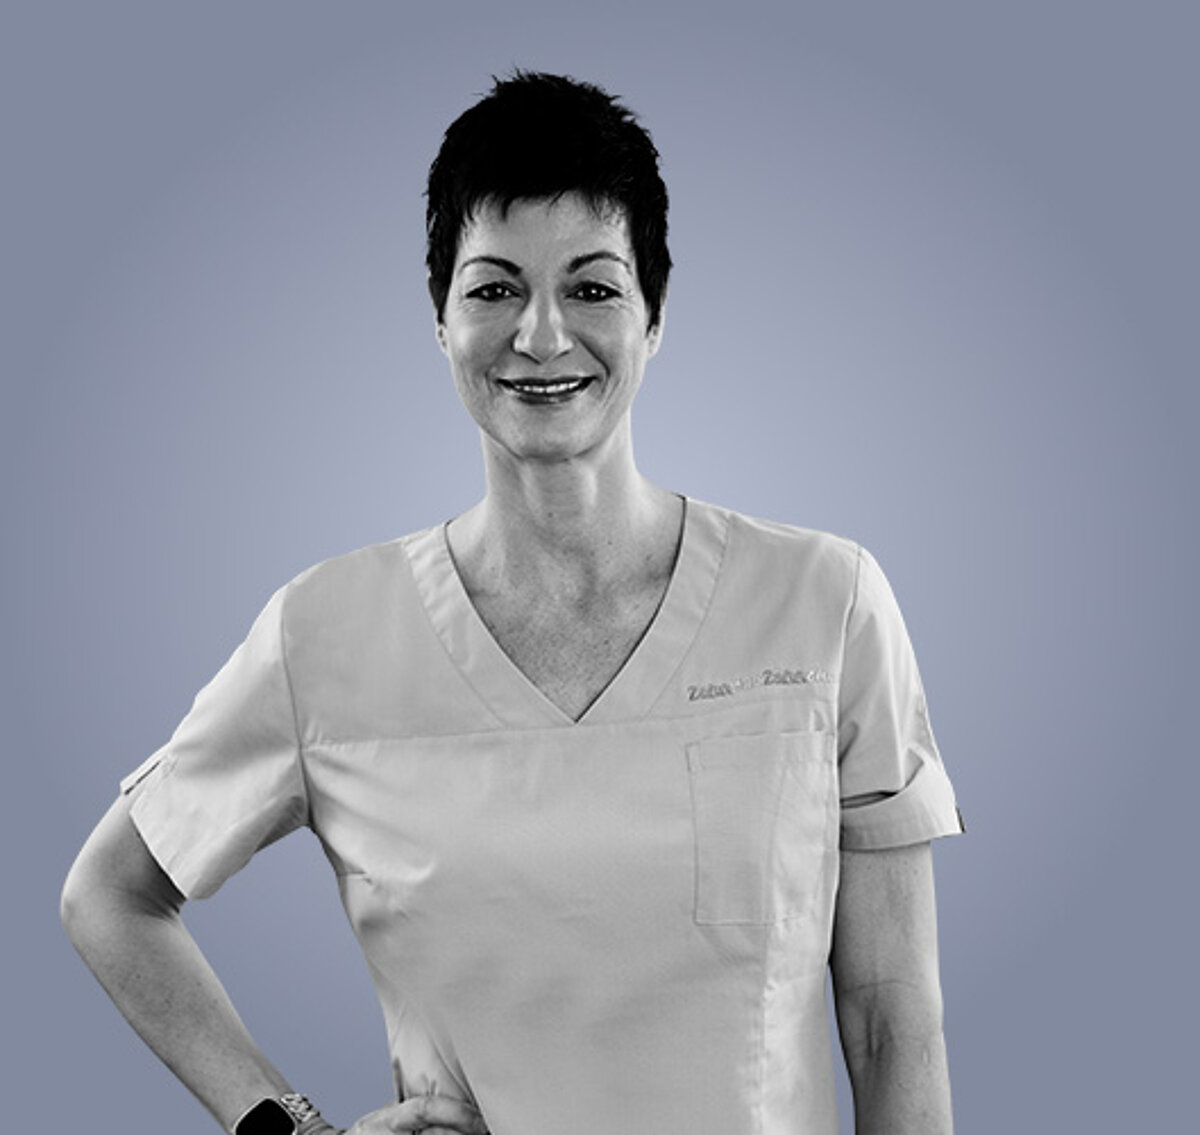 Martina, zahnärztliche Mitarbeiterin in der Zahnarztpraxis zahnpluszähnchen in Nürnberg